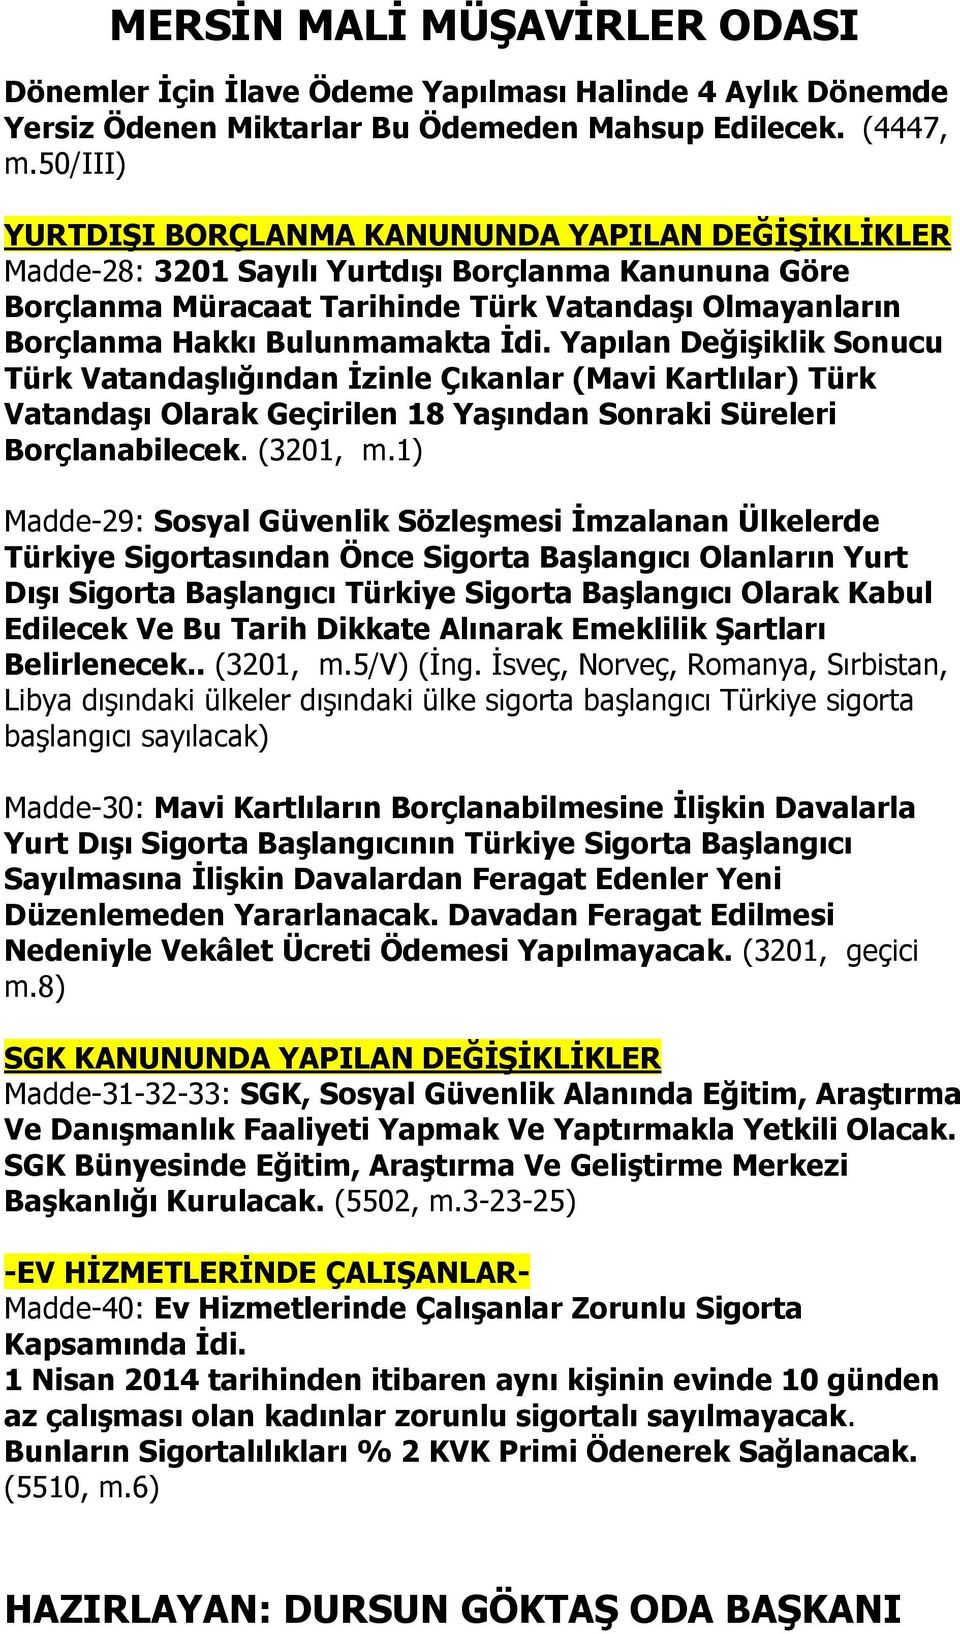 İdi. Yapılan Değişiklik Sonucu Türk Vatandaşlığından İzinle Çıkanlar (Mavi Kartlılar) Türk Vatandaşı Olarak Geçirilen 18 Yaşından Sonraki Süreleri Borçlanabilecek. (3201, m.